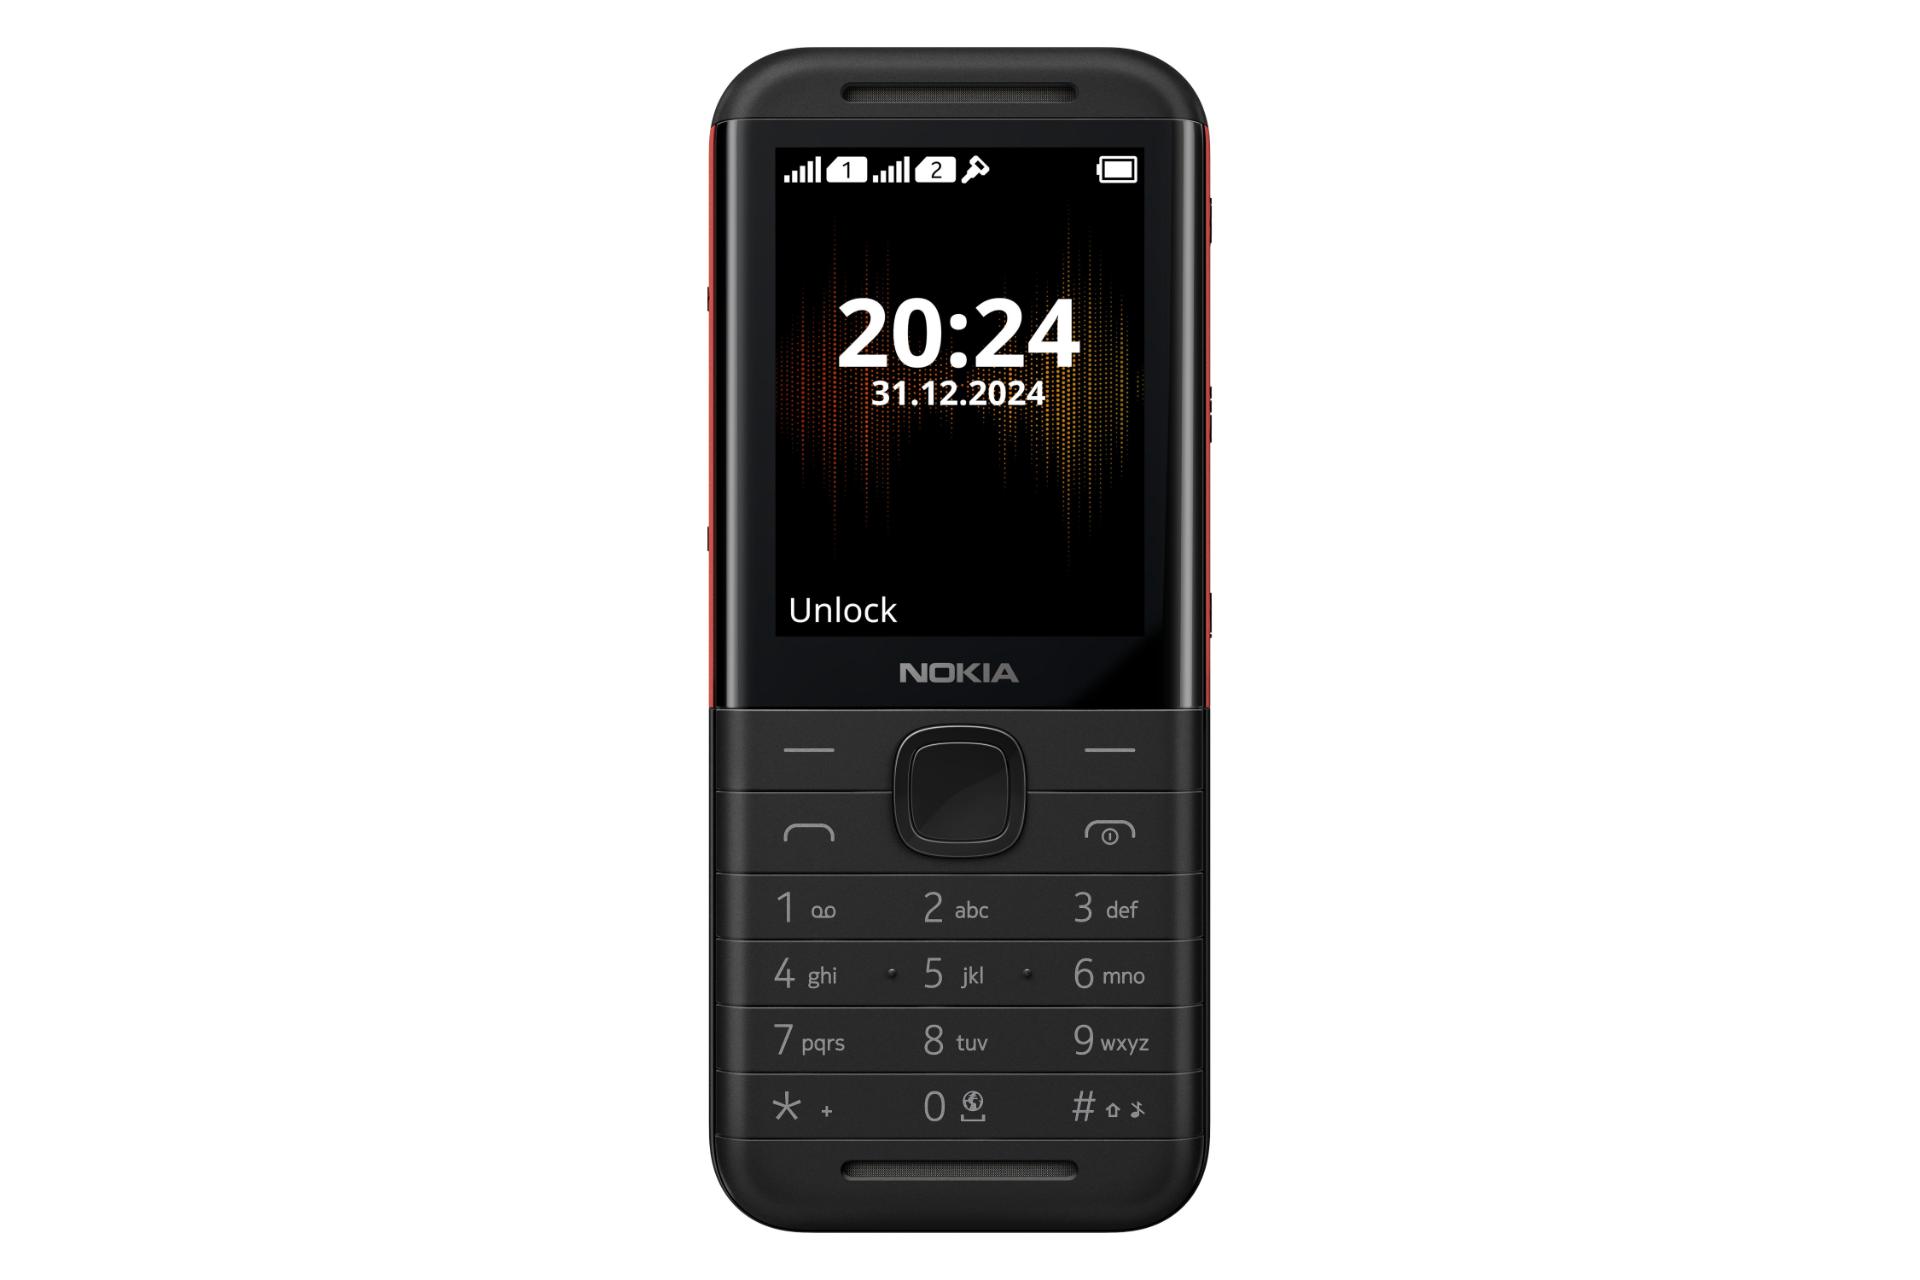 پنل جلو و صفحه کلید گوشی موبایل نوکیا 5310 نسخه 2024 مشکی و قرمز / Nokia 5310 2024